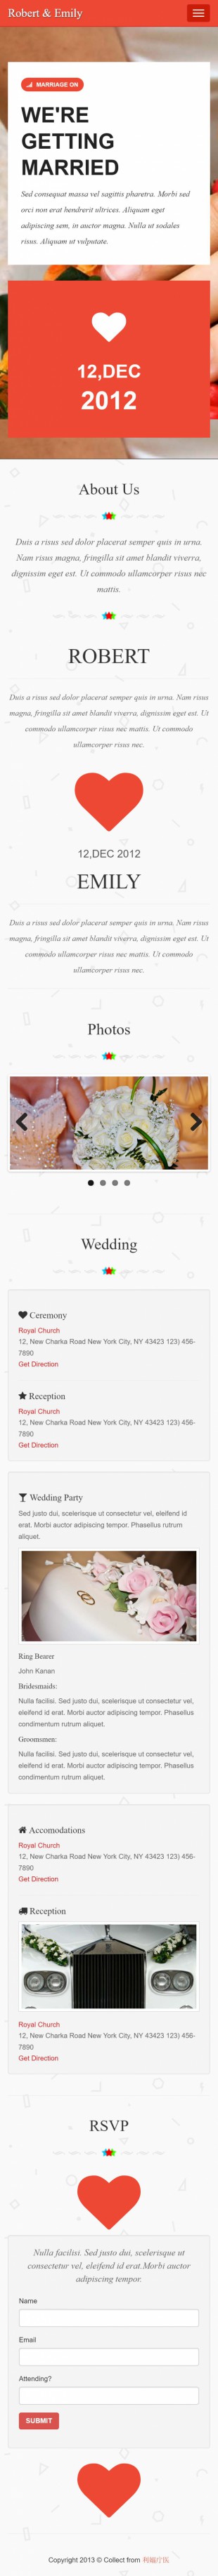 婚礼策划类英文网站模板制作响应式网站手机图片